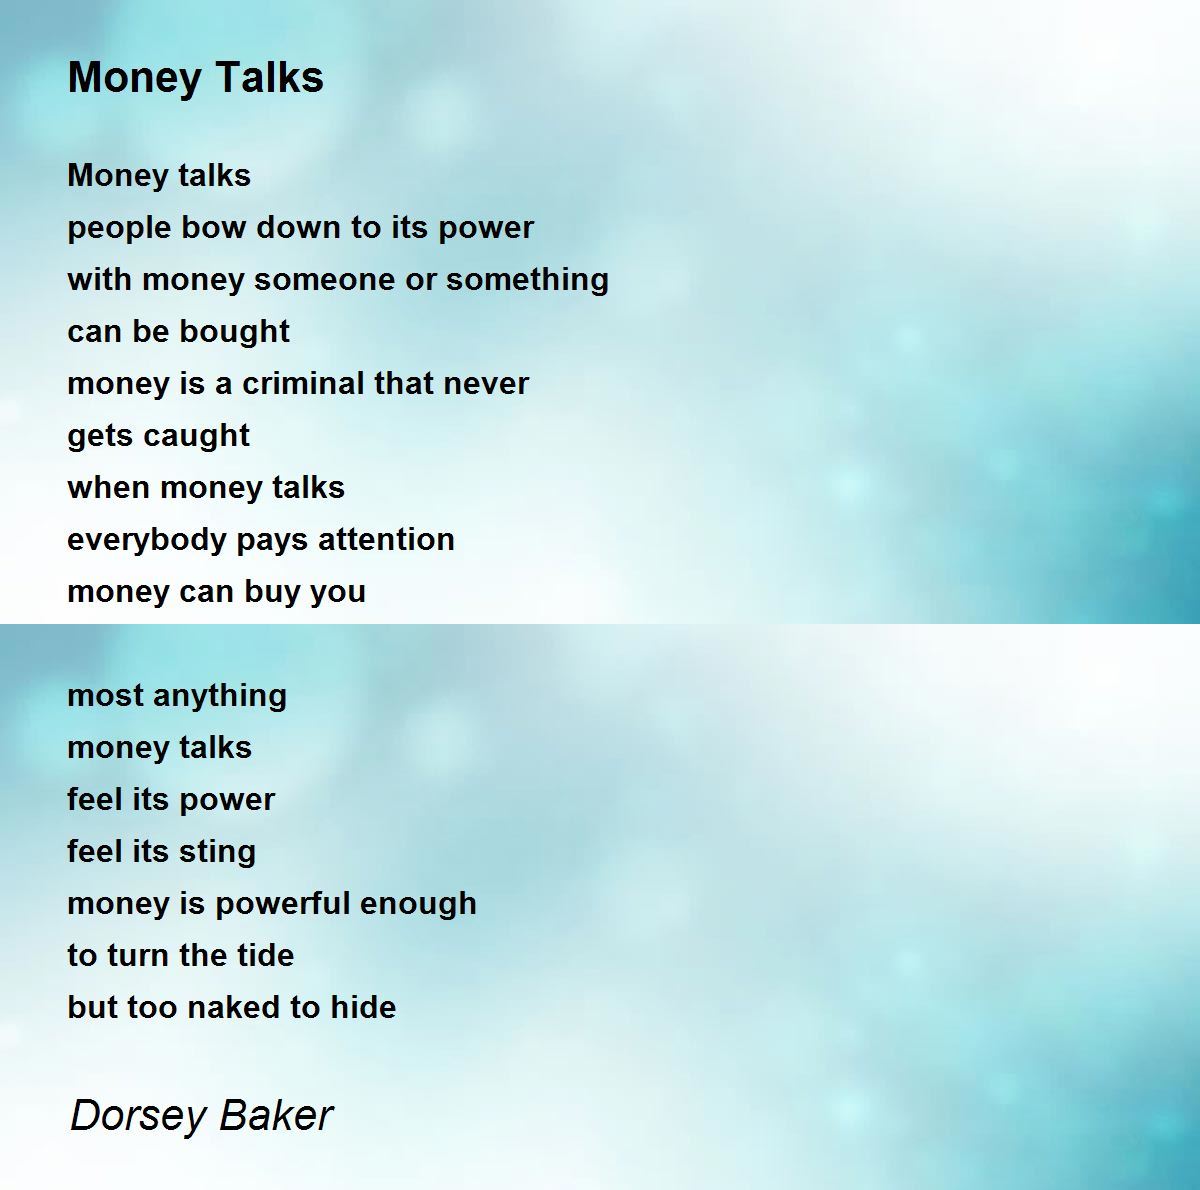 Money Talks - Money Talks Poem by Dorsey Baker